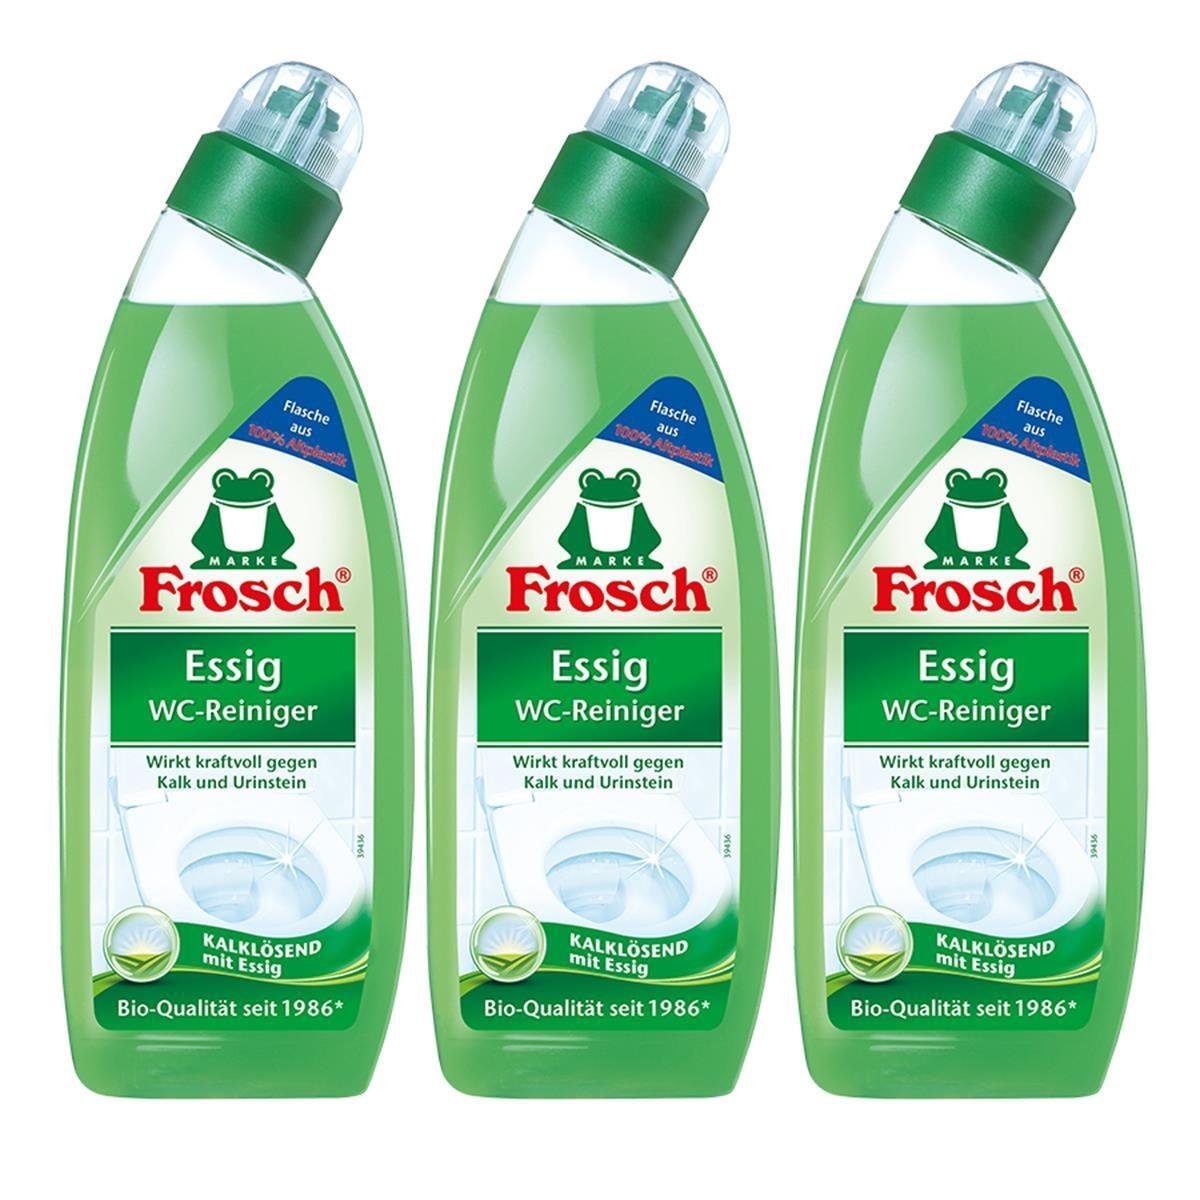 FROSCH 3x Frosch ml Kalklösend Essig WC-Reiniger - Essig mit 750 WC-Reiniger